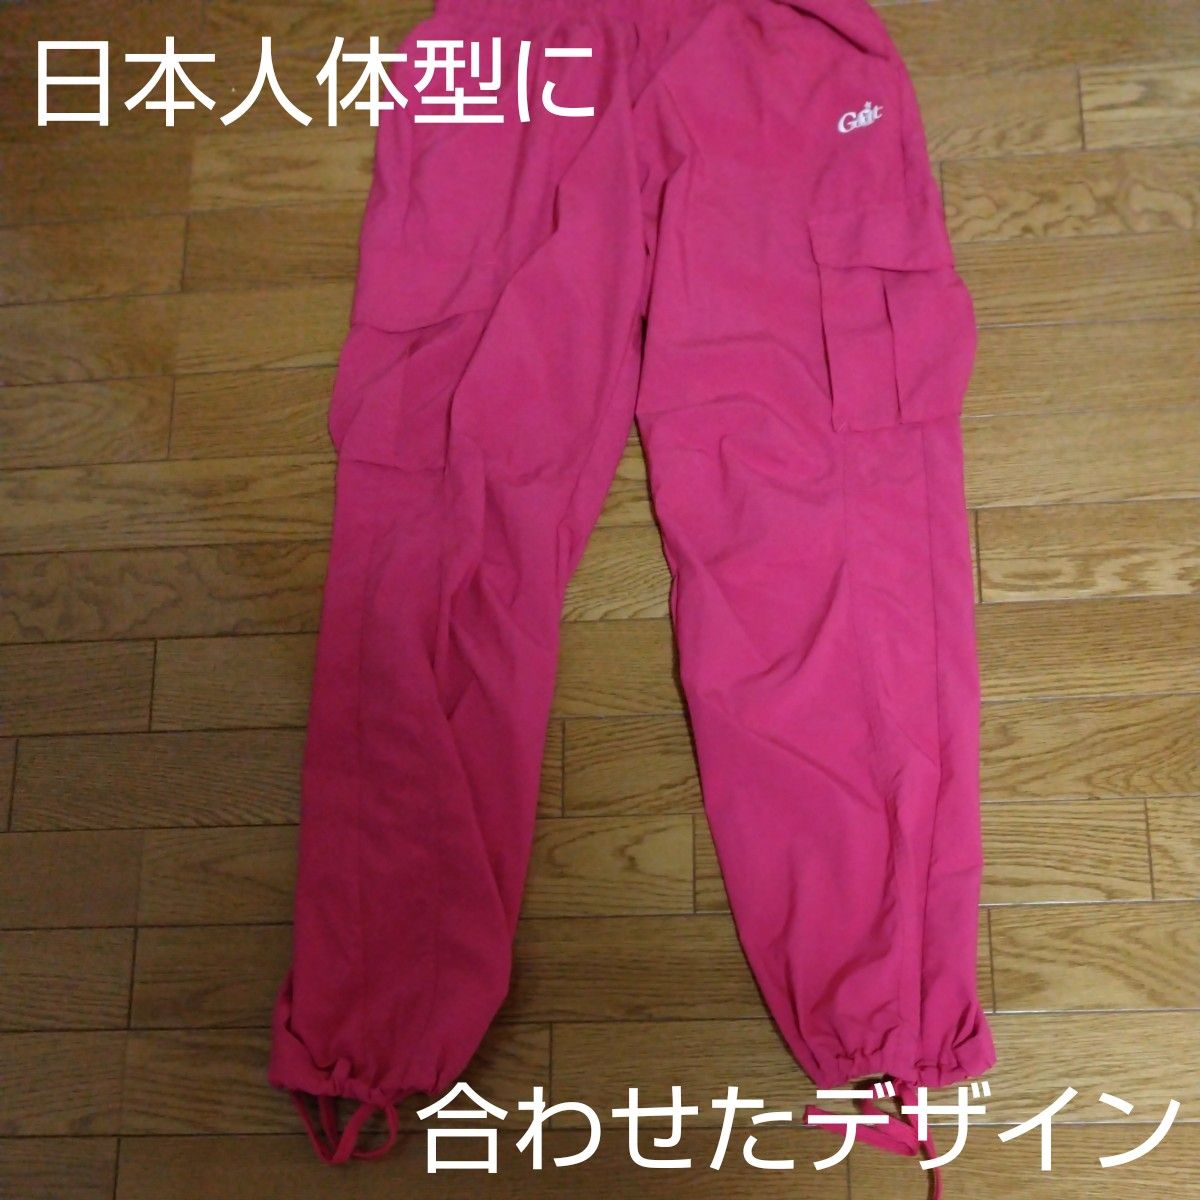 【なんと398円】G-fit パンツ